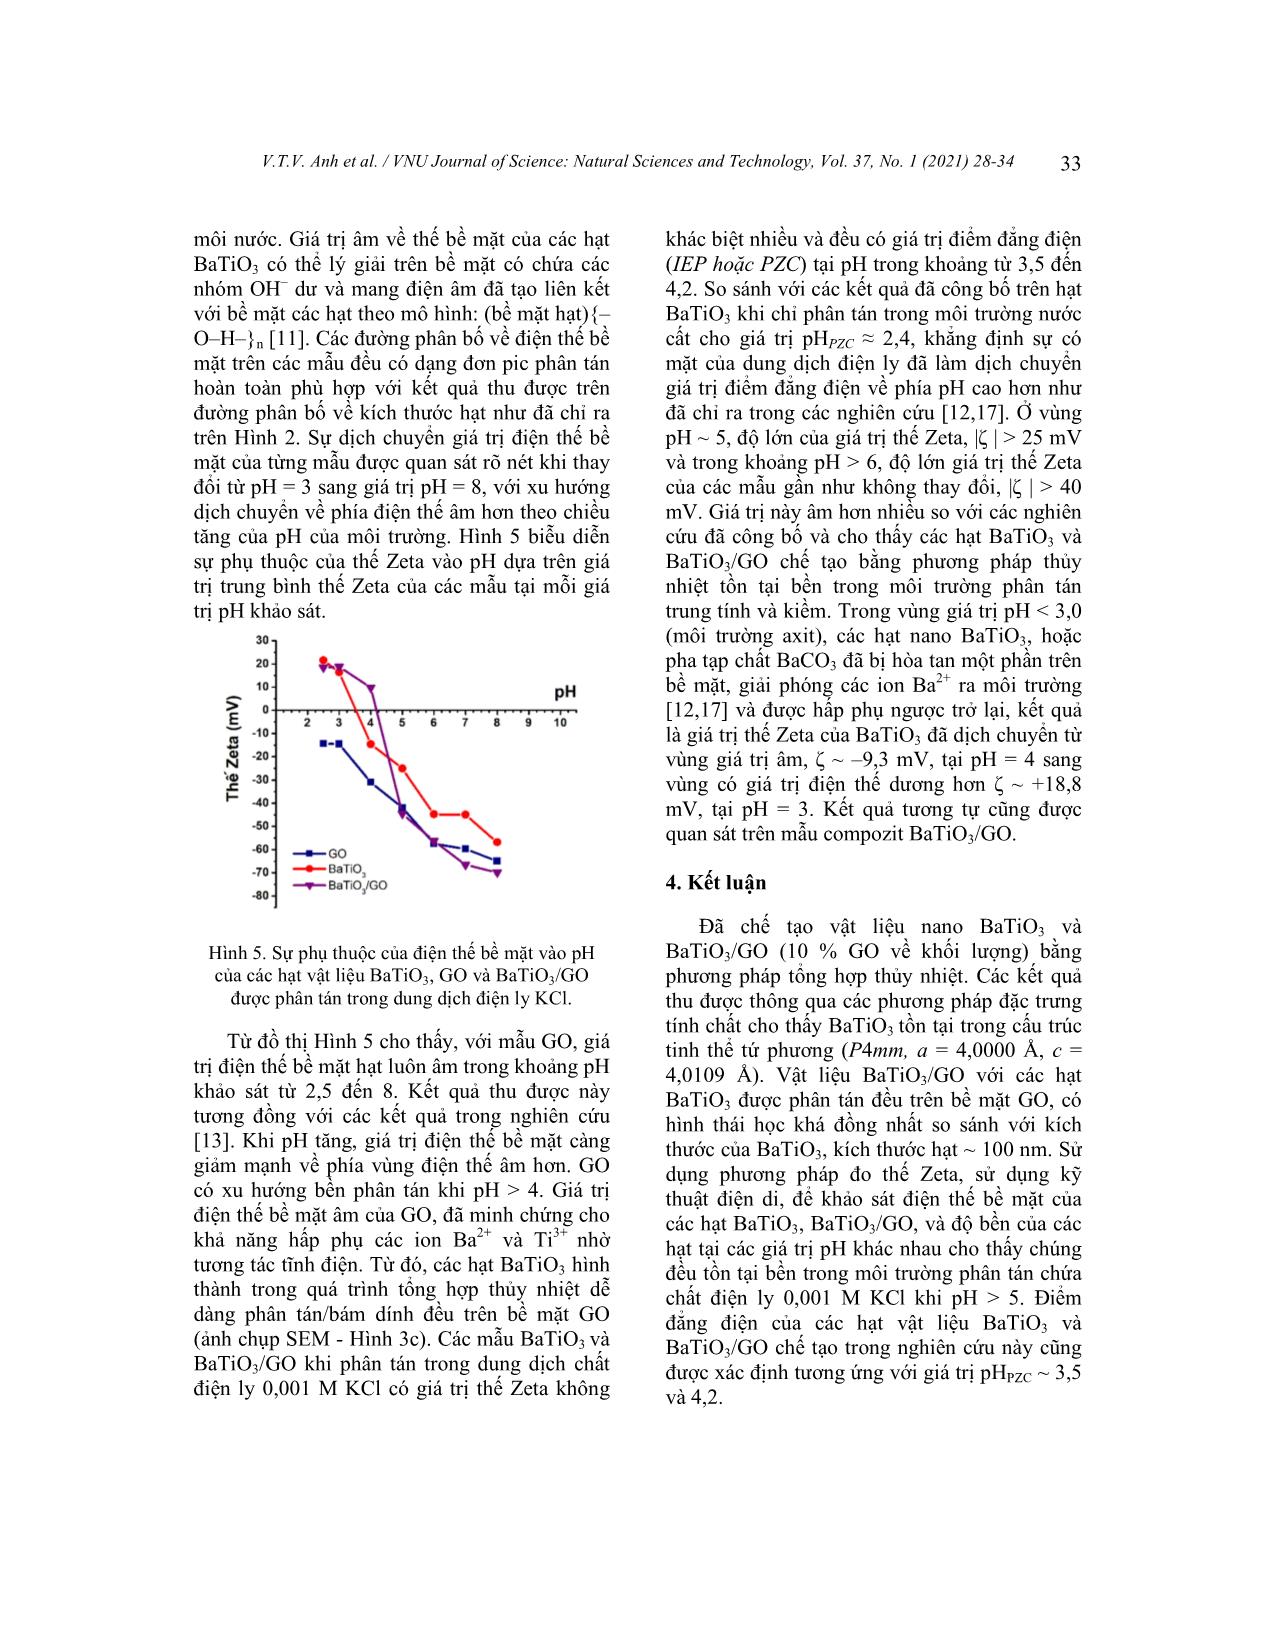 Đặc trưng thế bề mặt và điểm đẳng điện của vật liệu nano BaTiO₃ /graphen oxit bằng phương pháp điện di trang 6